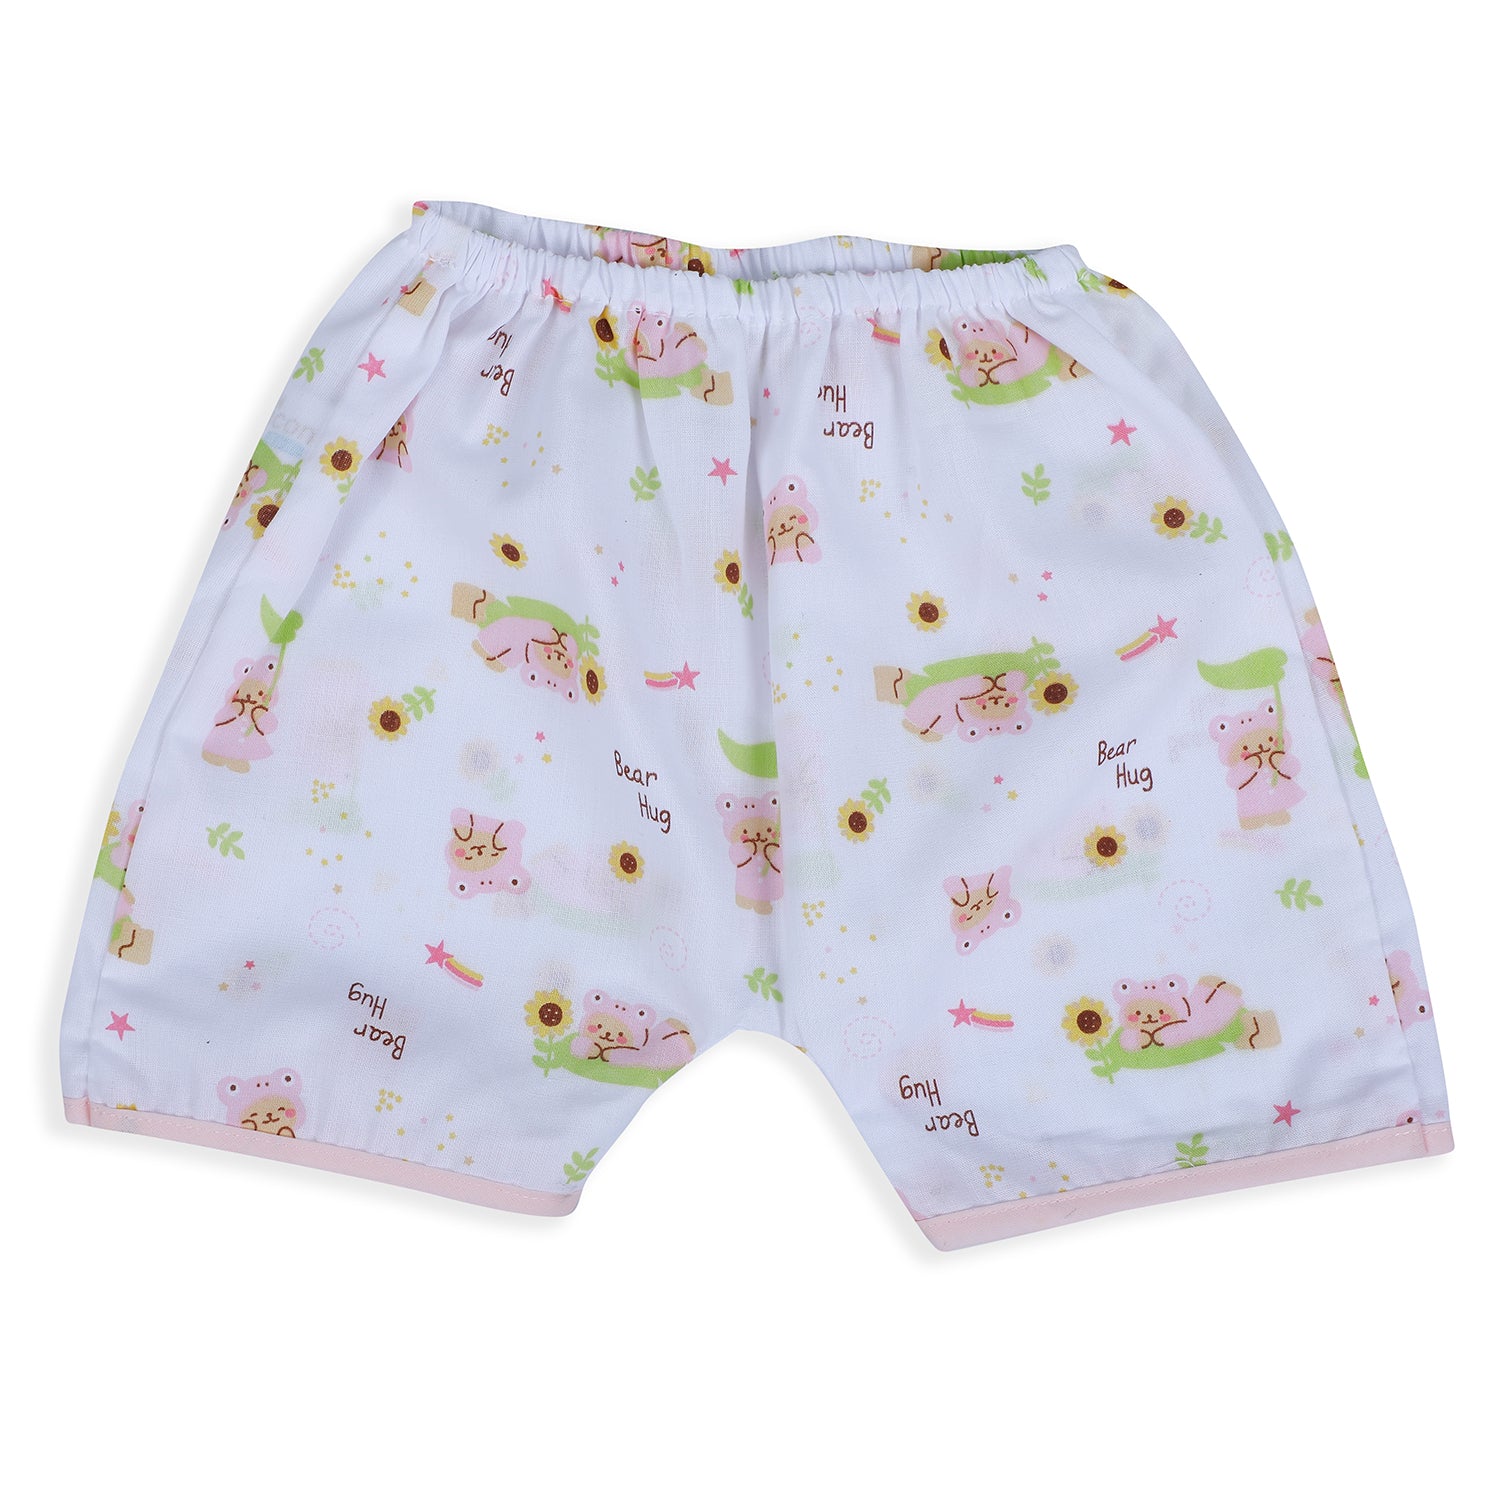 Baby Moo Bear Hug Half Sleeves Soft Cotton Jhabla And Shorts 2pcs Set - Pink - Baby Moo